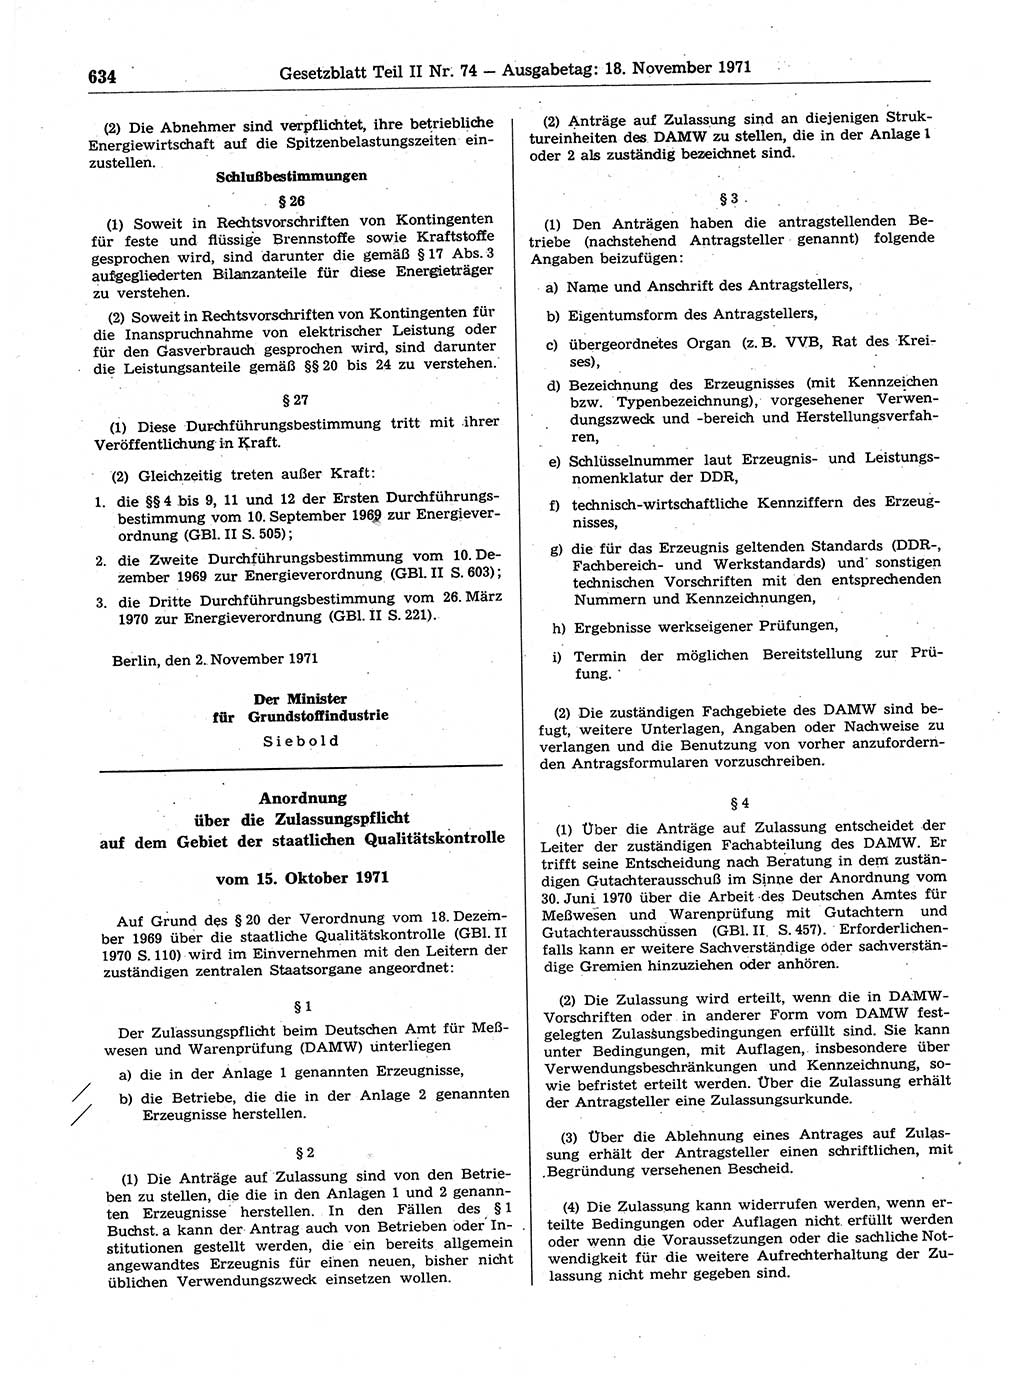 Gesetzblatt (GBl.) der Deutschen Demokratischen Republik (DDR) Teil ⅠⅠ 1971, Seite 634 (GBl. DDR ⅠⅠ 1971, S. 634)